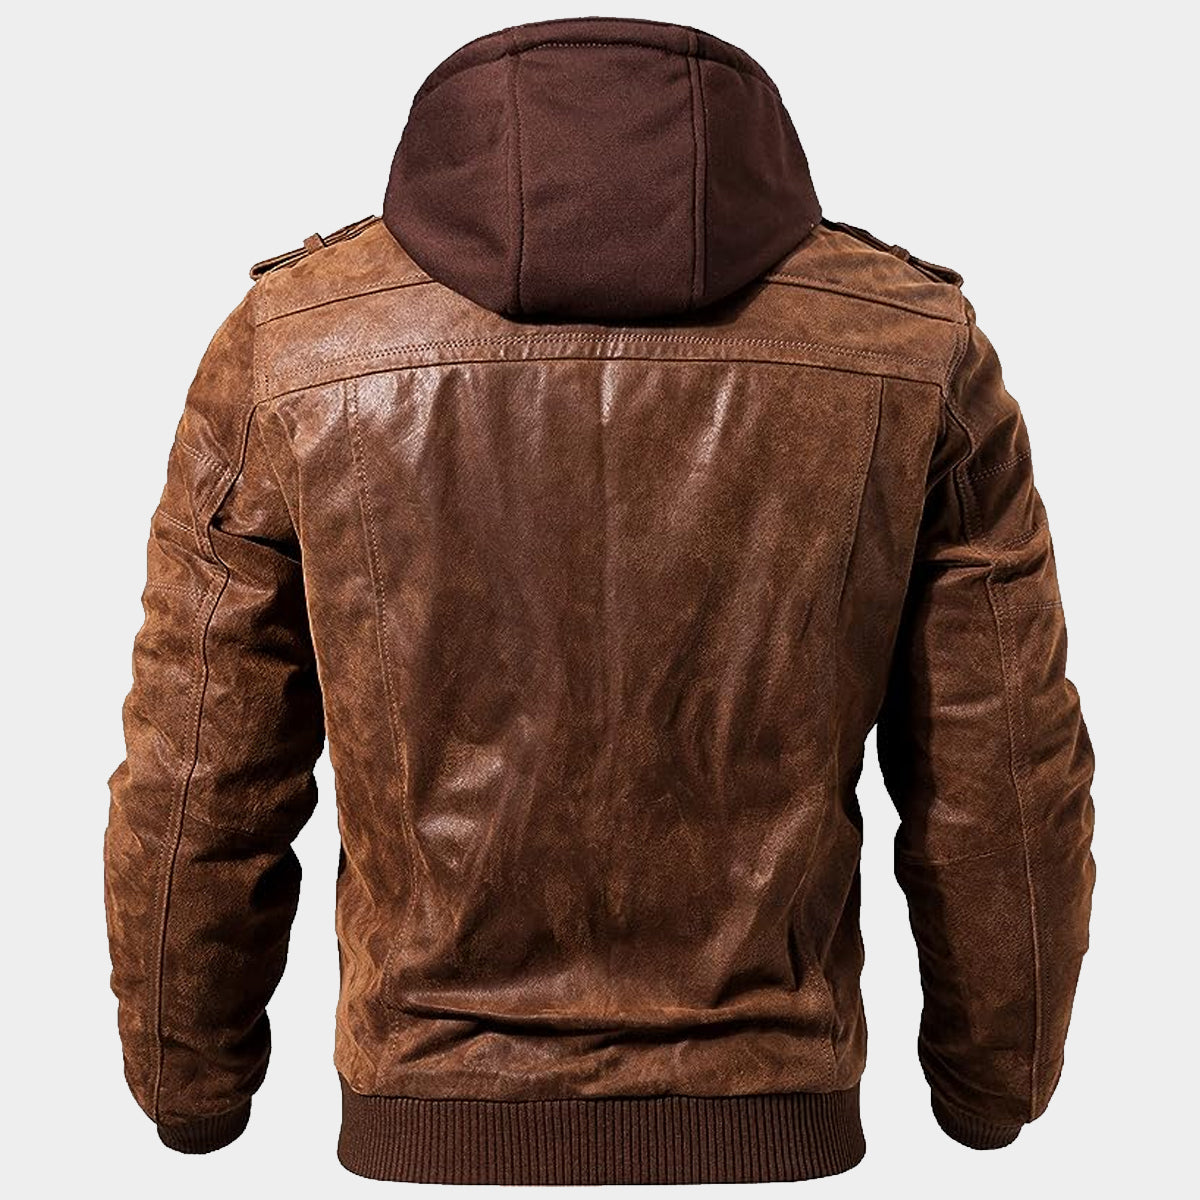 FLavor brown leather jacket coweep